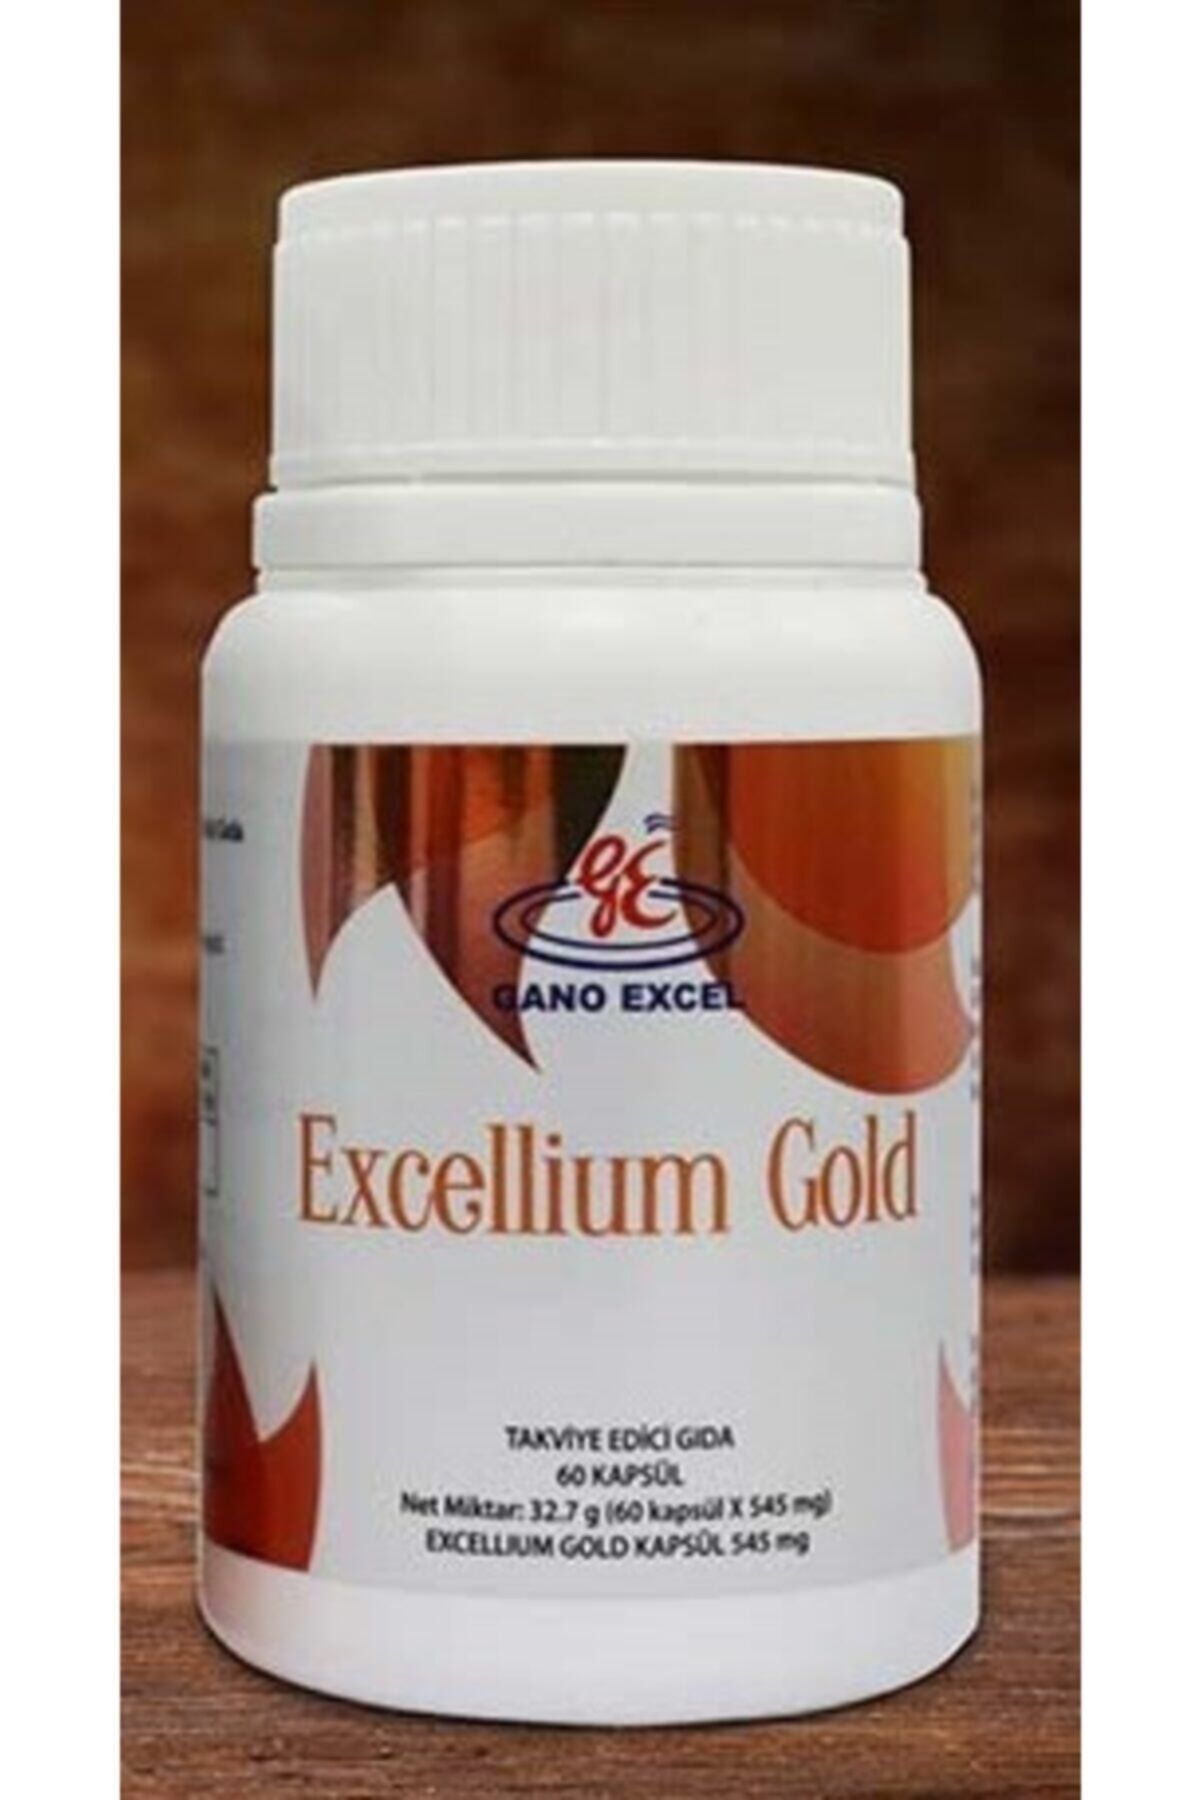 GanoExcel Gano Excel - Excellıum Gold - (60 Kapsül